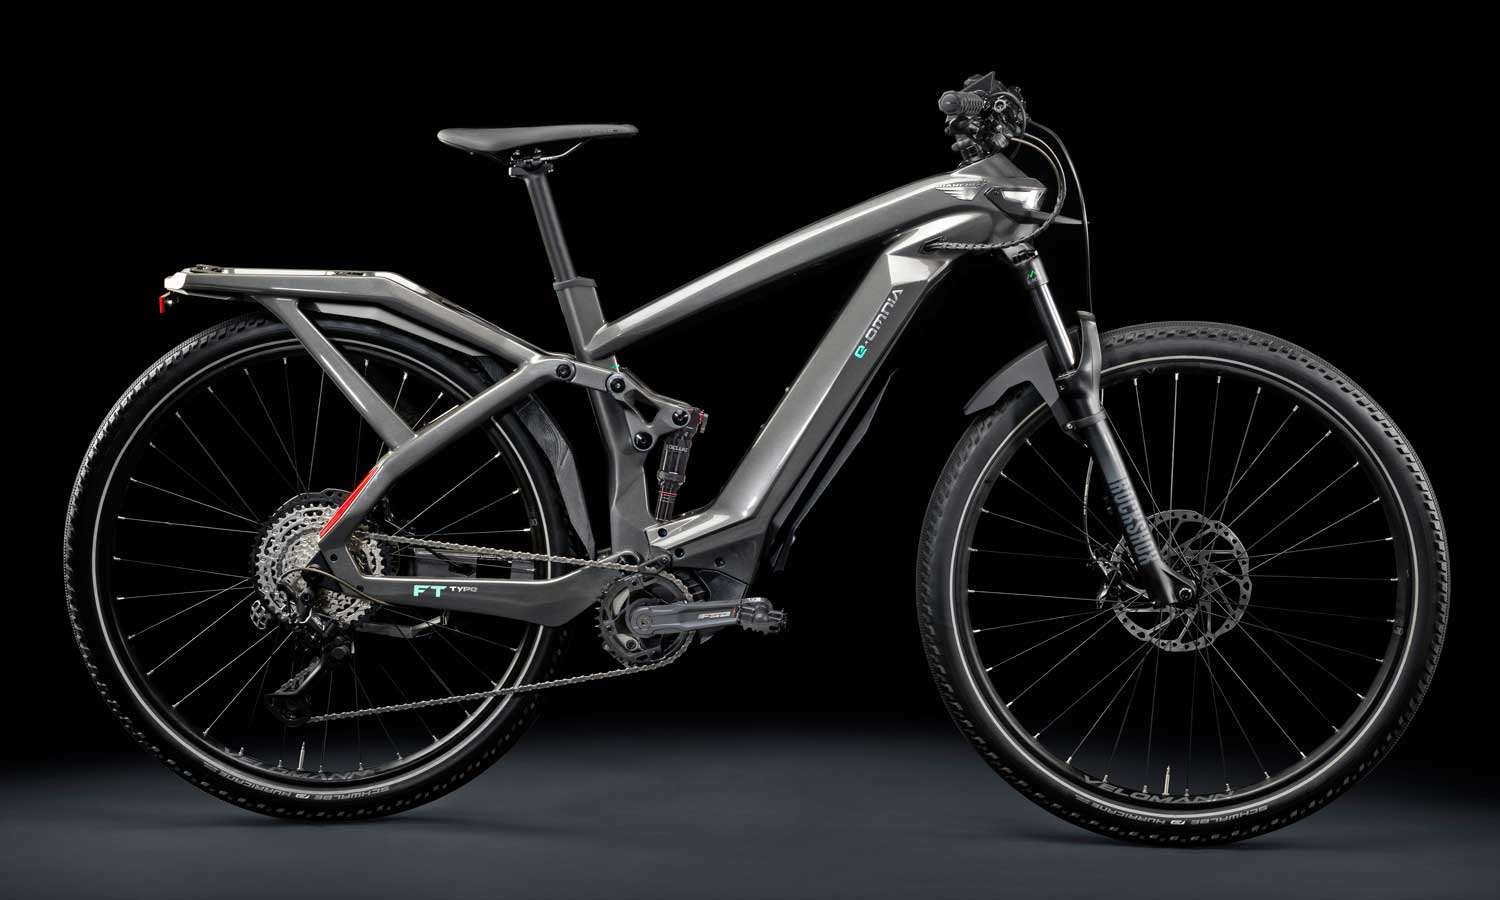 2021 Bianchi e-Omnia alloy e-bike eMTB family, city commuter trekking tourer mountain, FT-Type